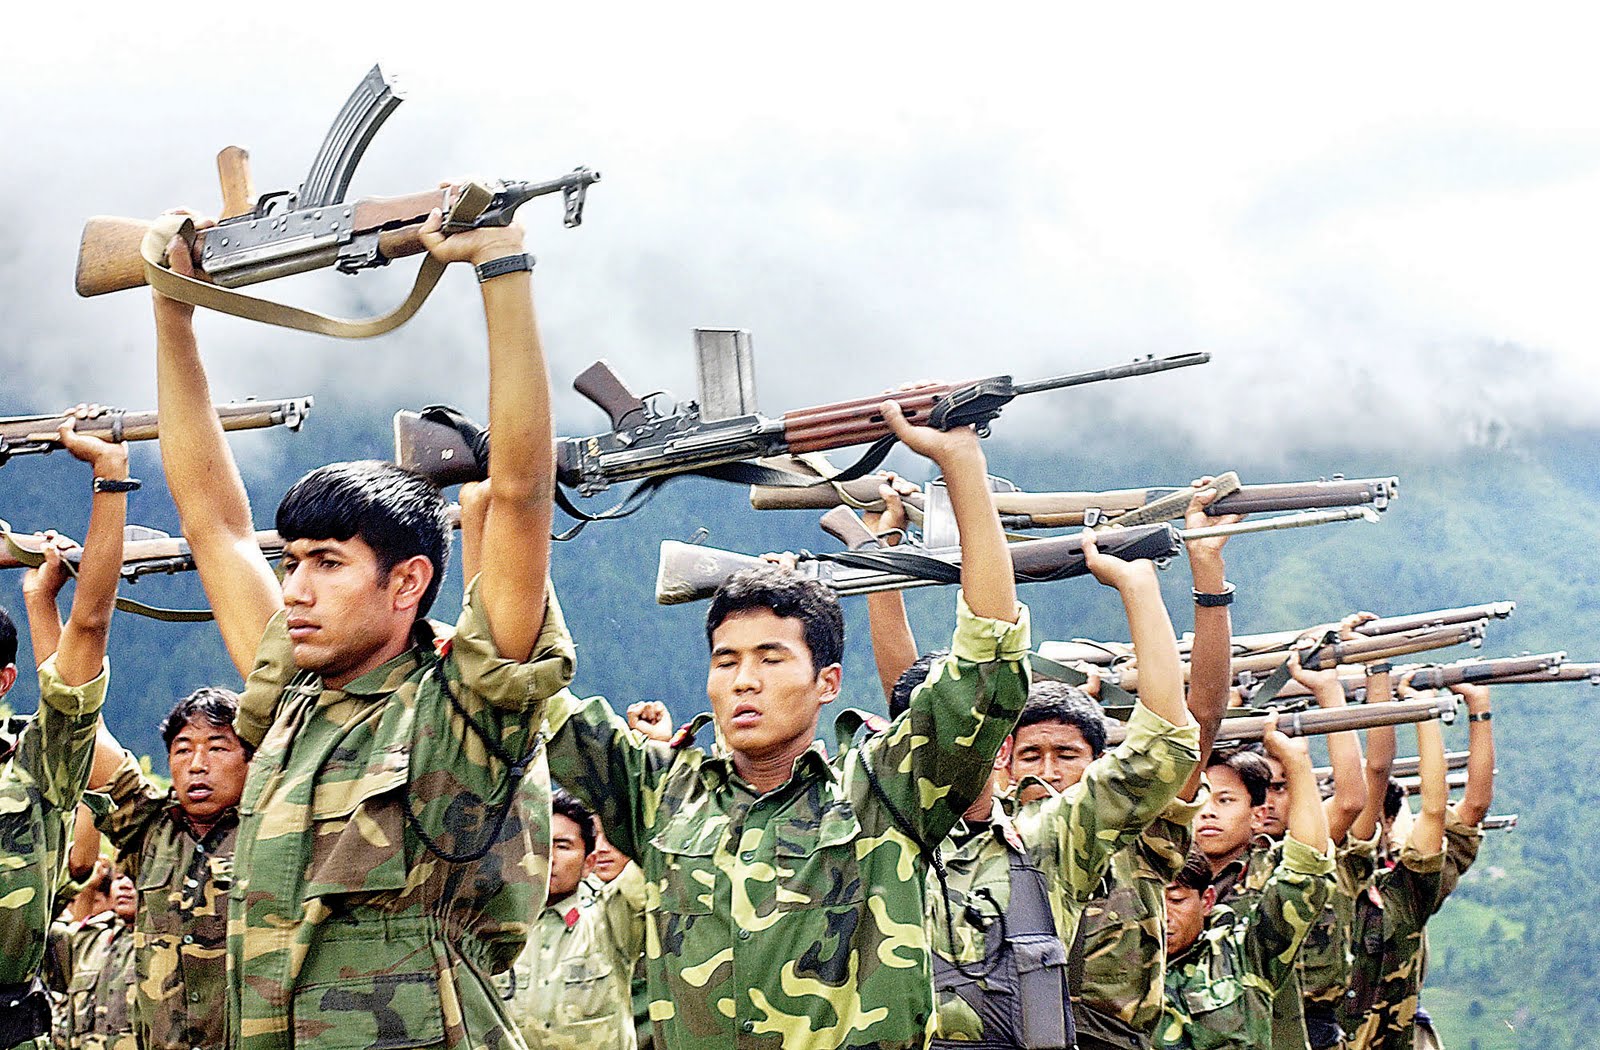 Nepal Army constructs tap at Tamfula